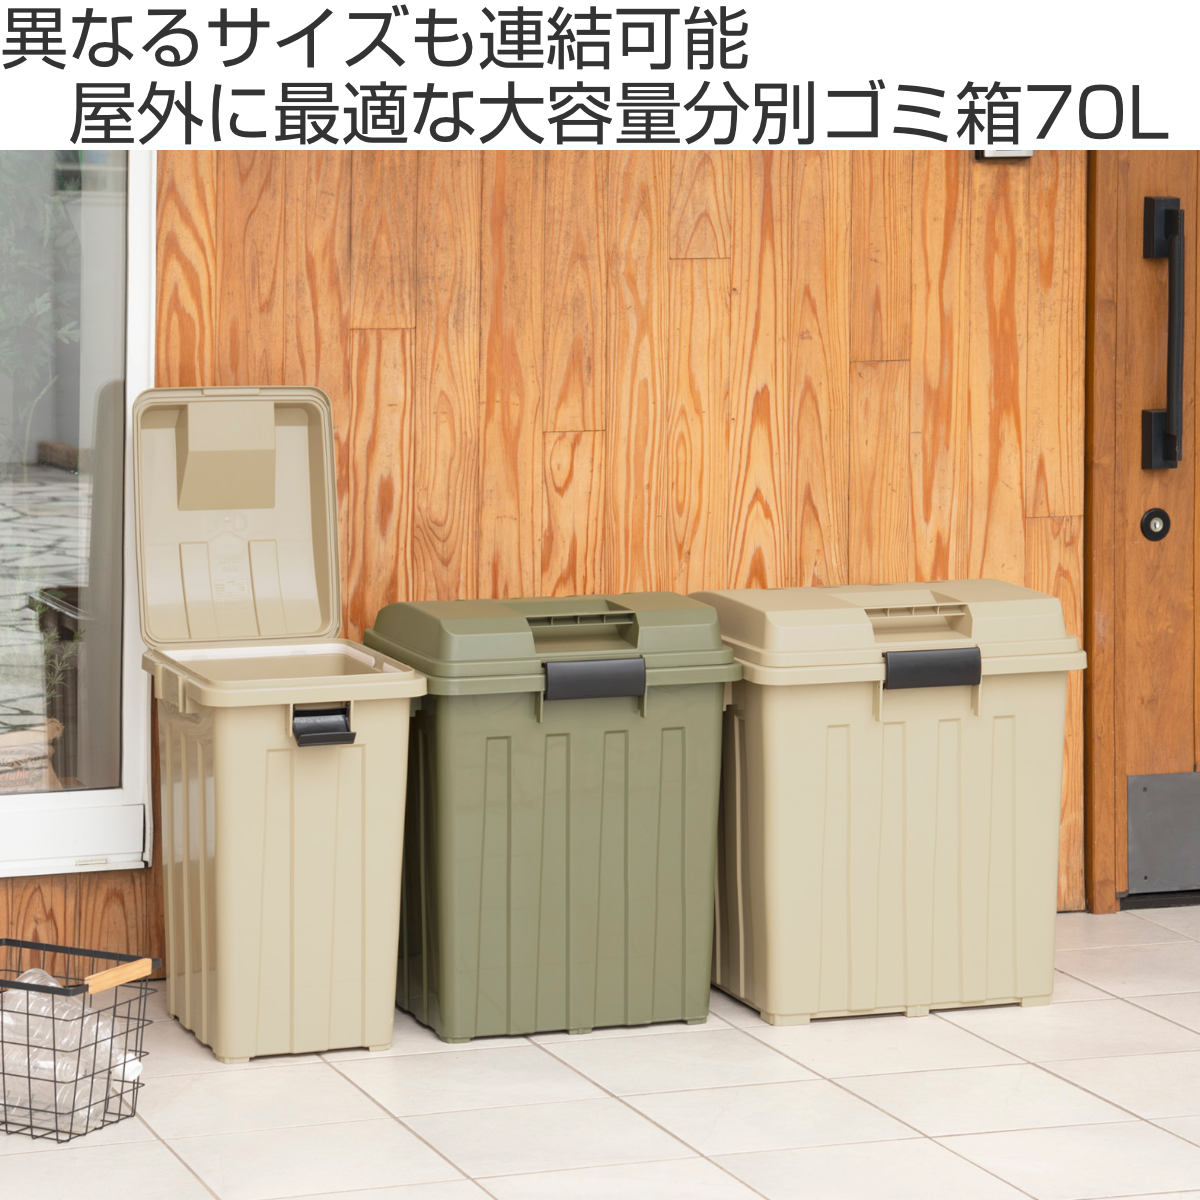 16,332円【大型・業務用】ゴミ箱 屋外 大容量 ダストボックス